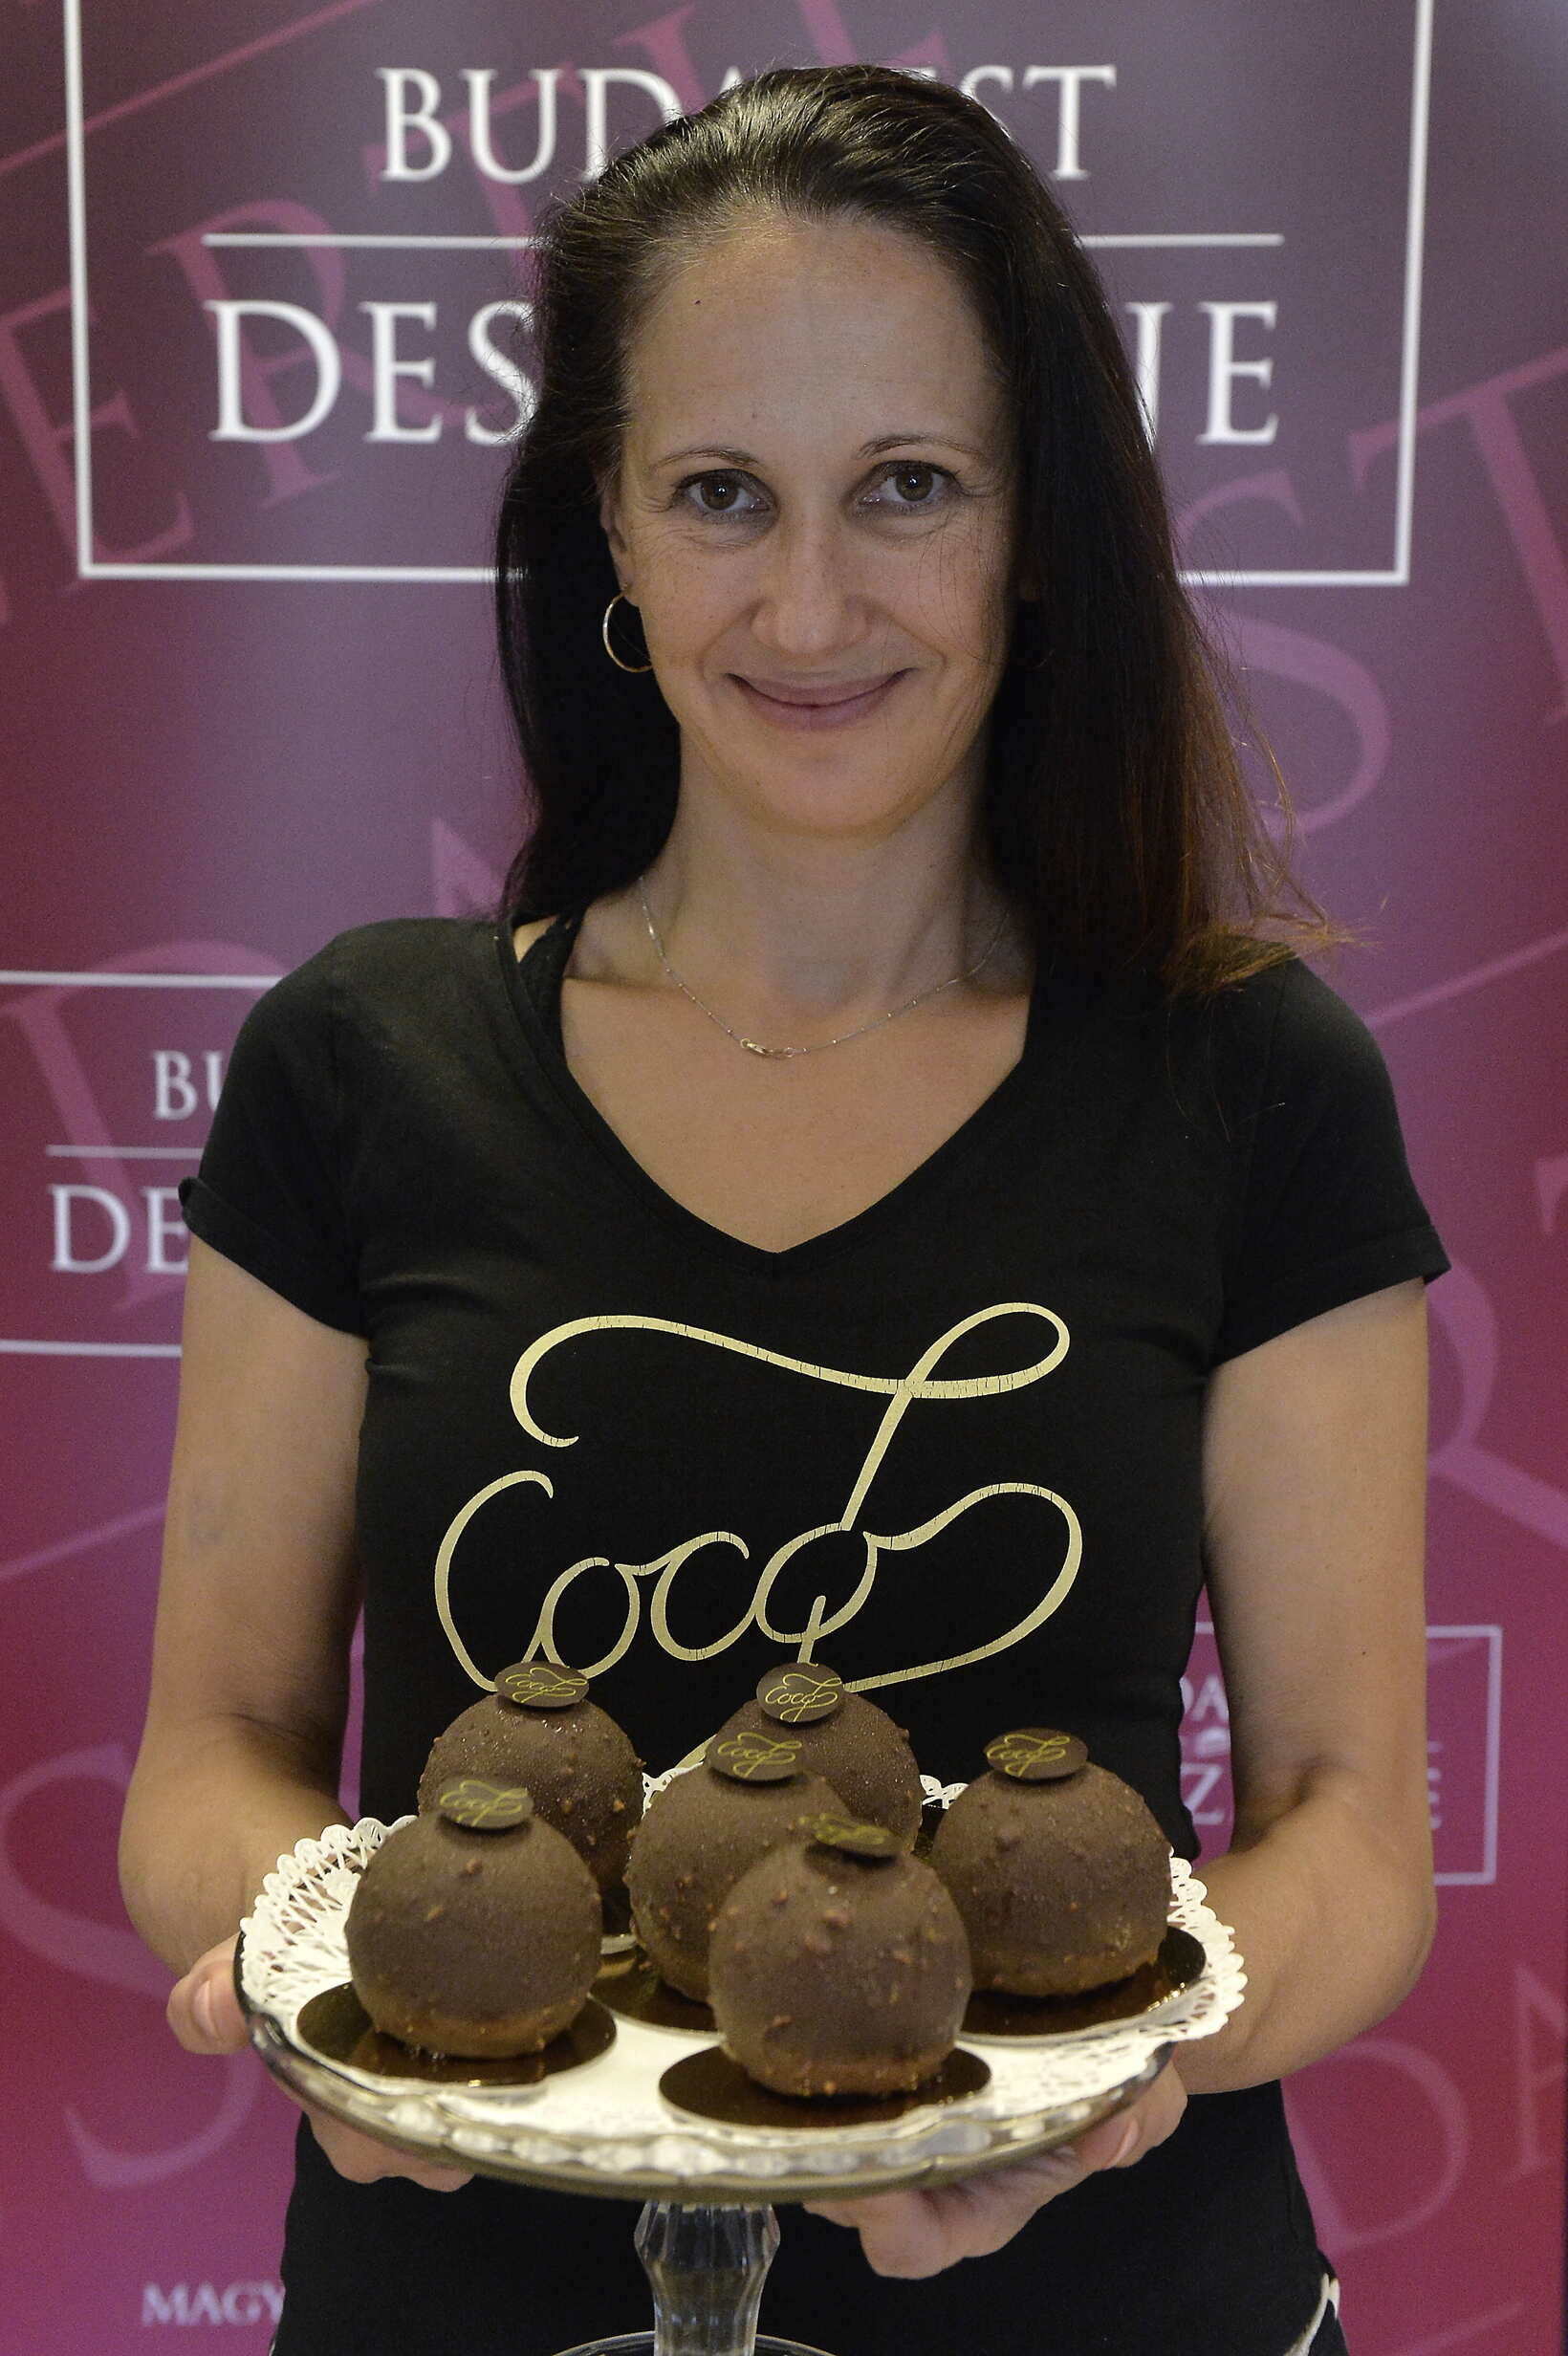 Dessert-de-Budapest-Coco7-Chocolate-Shop-cake-food